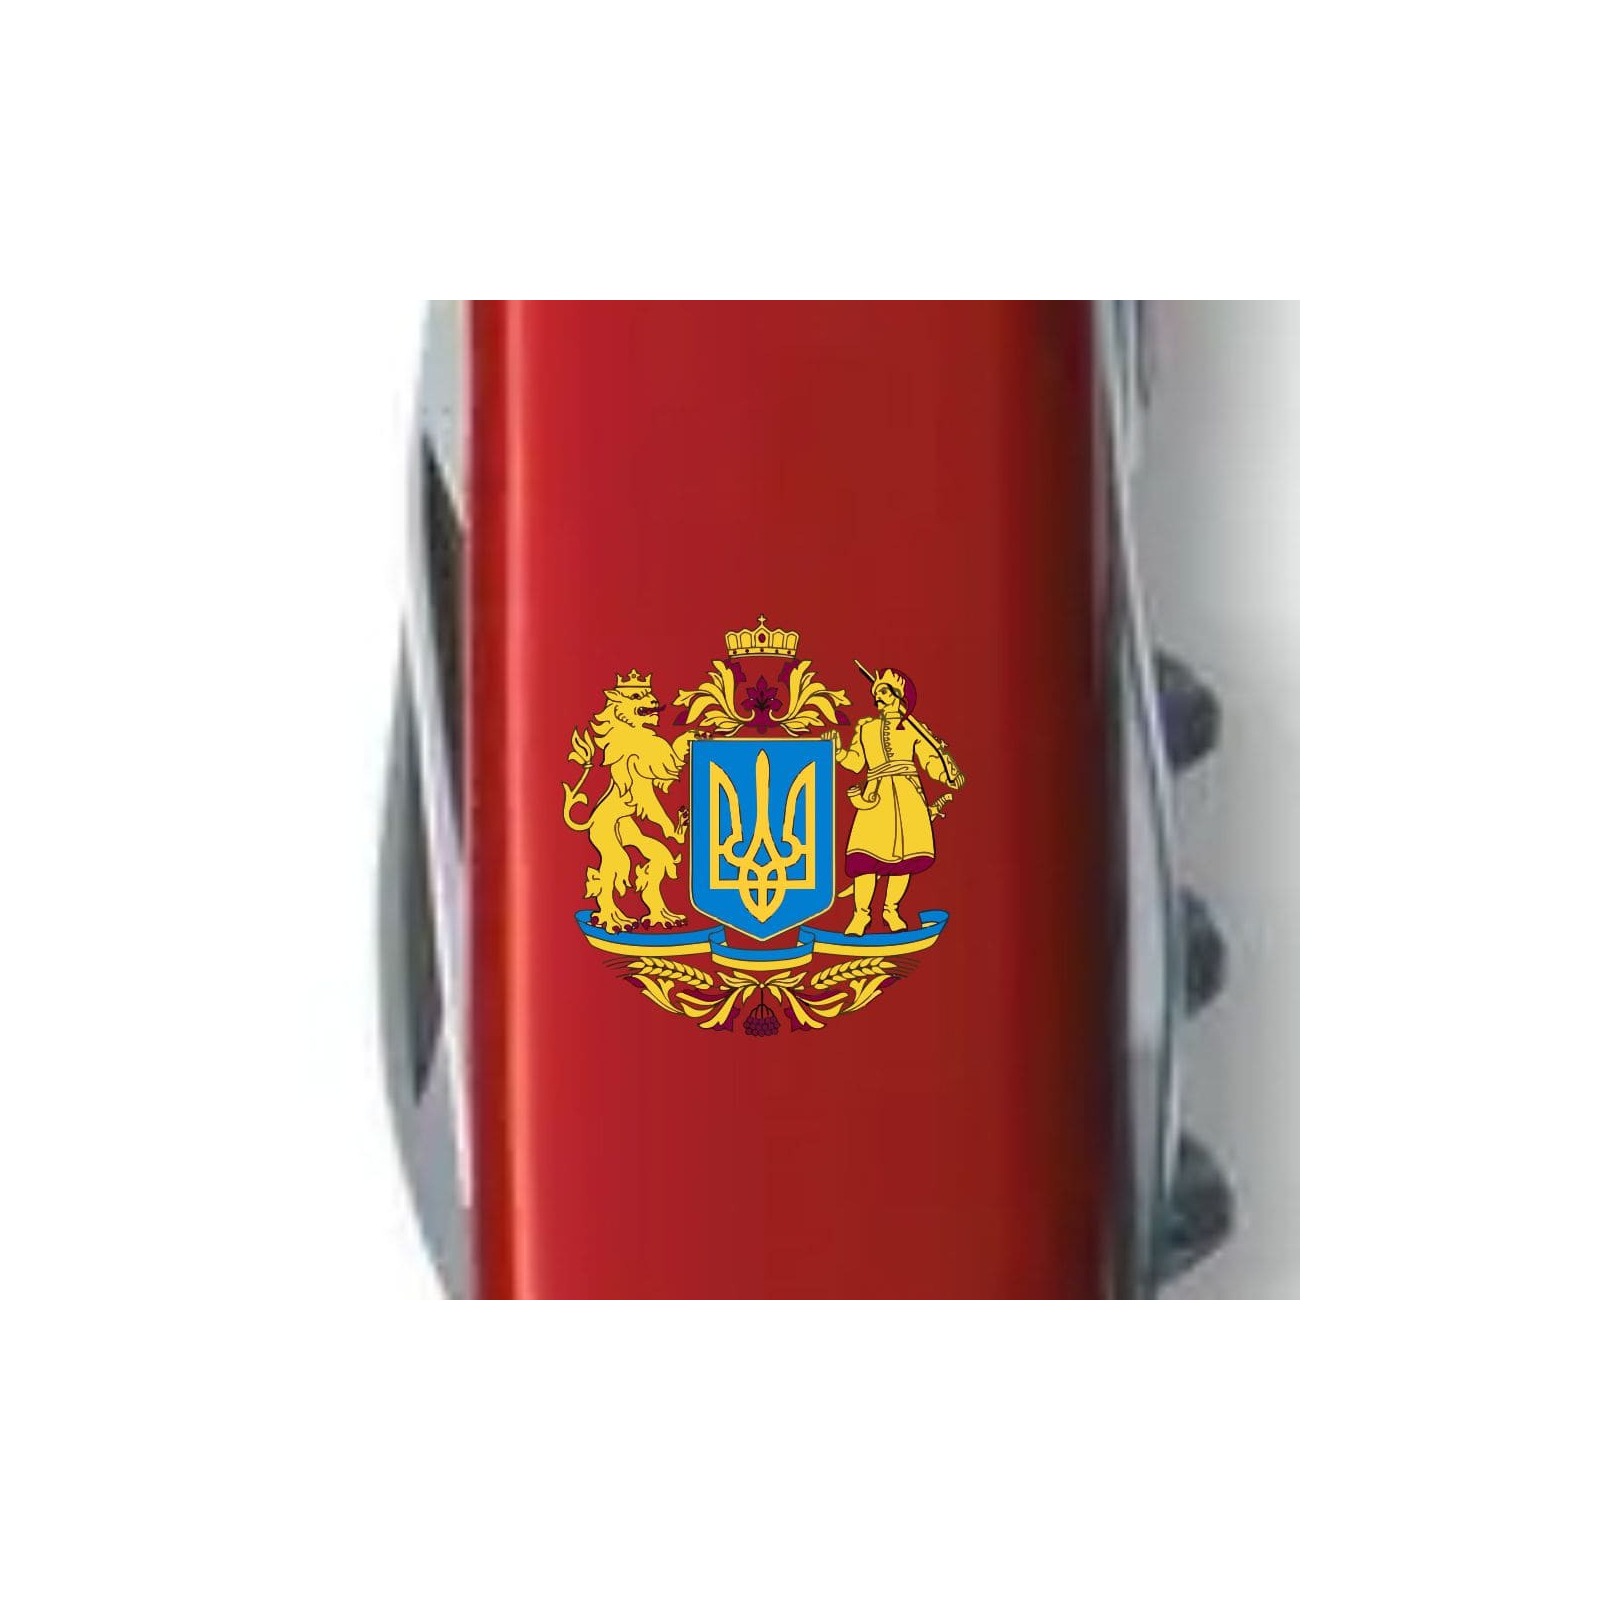 Нож Victorinox Climber Ukraine Red "Тризуб" (1.3703_T0010u) изображение 4